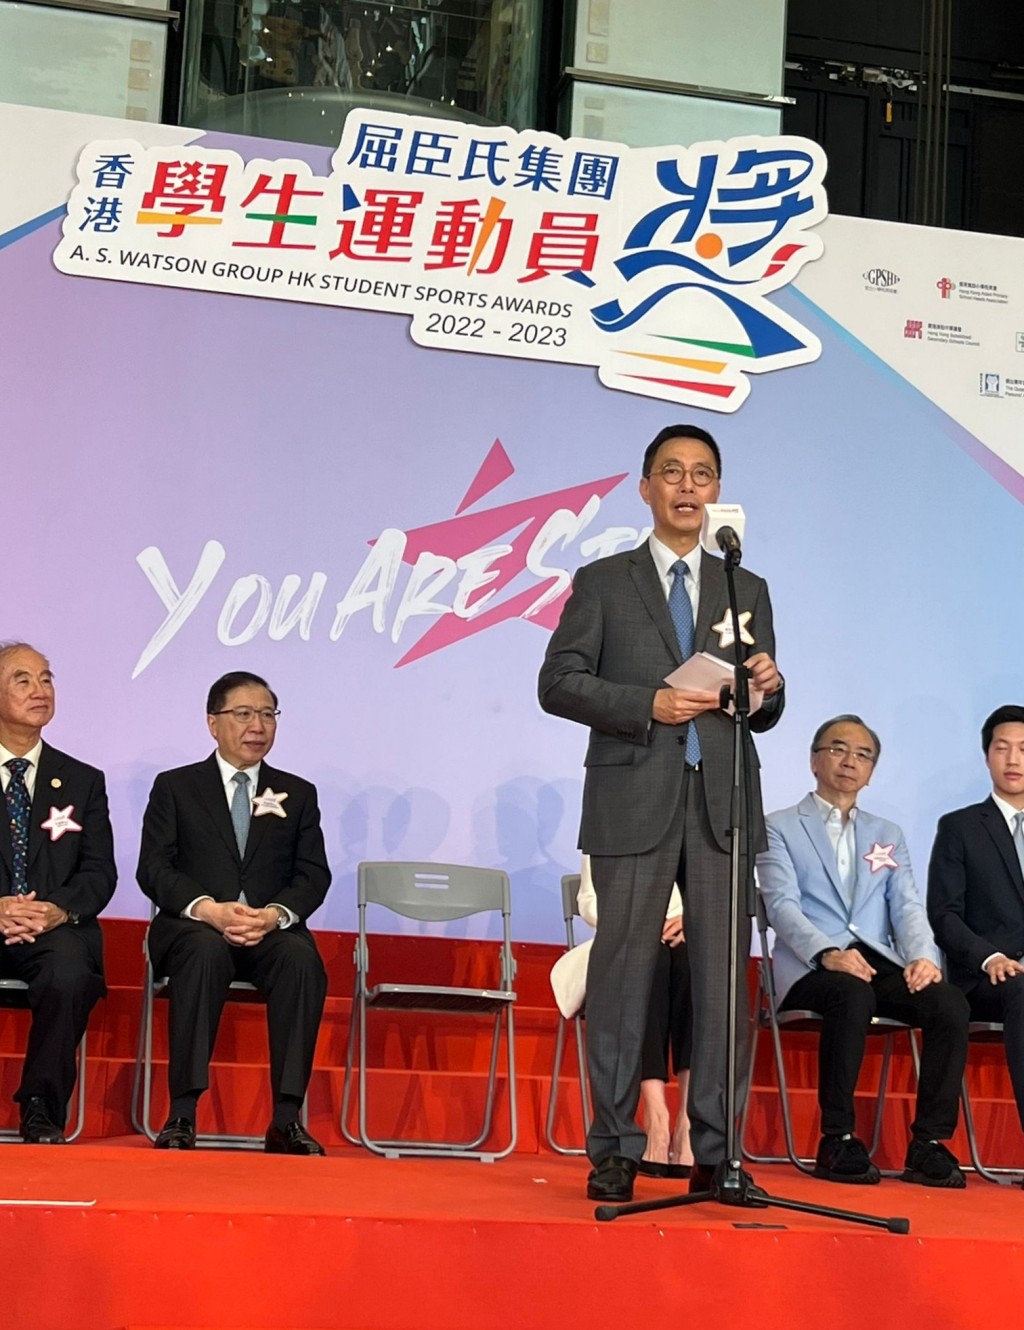 楊潤雄出席「屈臣氏集團香港學生運動員獎2022-2023」頒獎典禮。（政府新聞處）